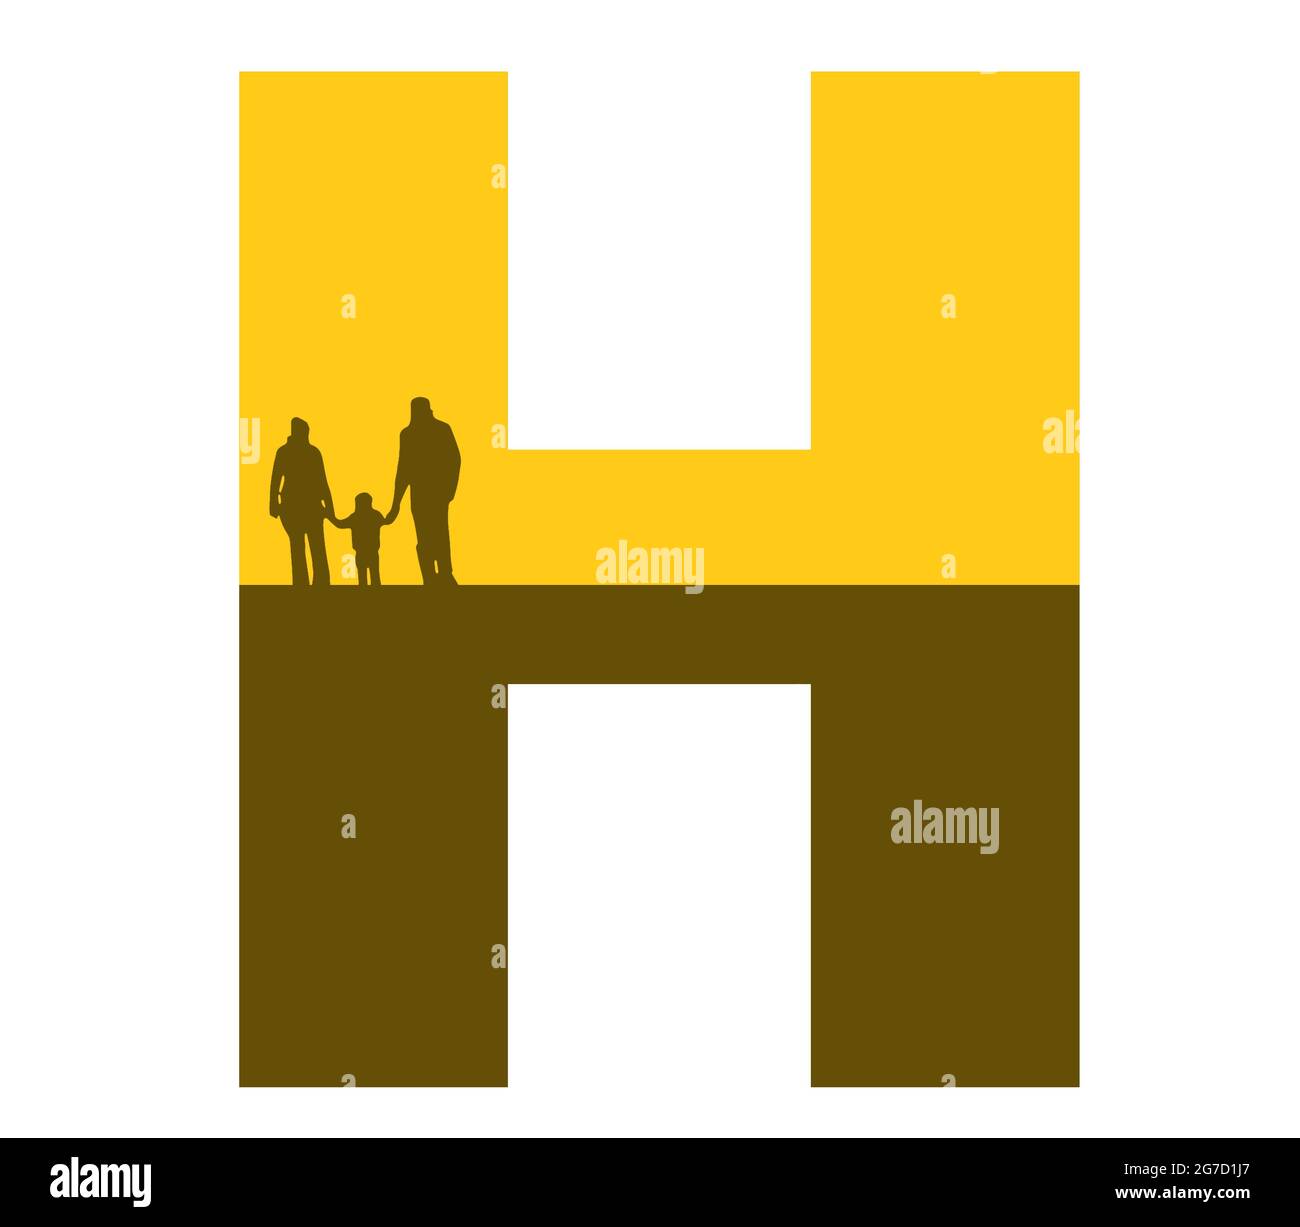 Lettre H de l'alphabet avec une silhouette de famille, de père, de mère et d'enfant, de couleur ocre et marron Banque D'Images